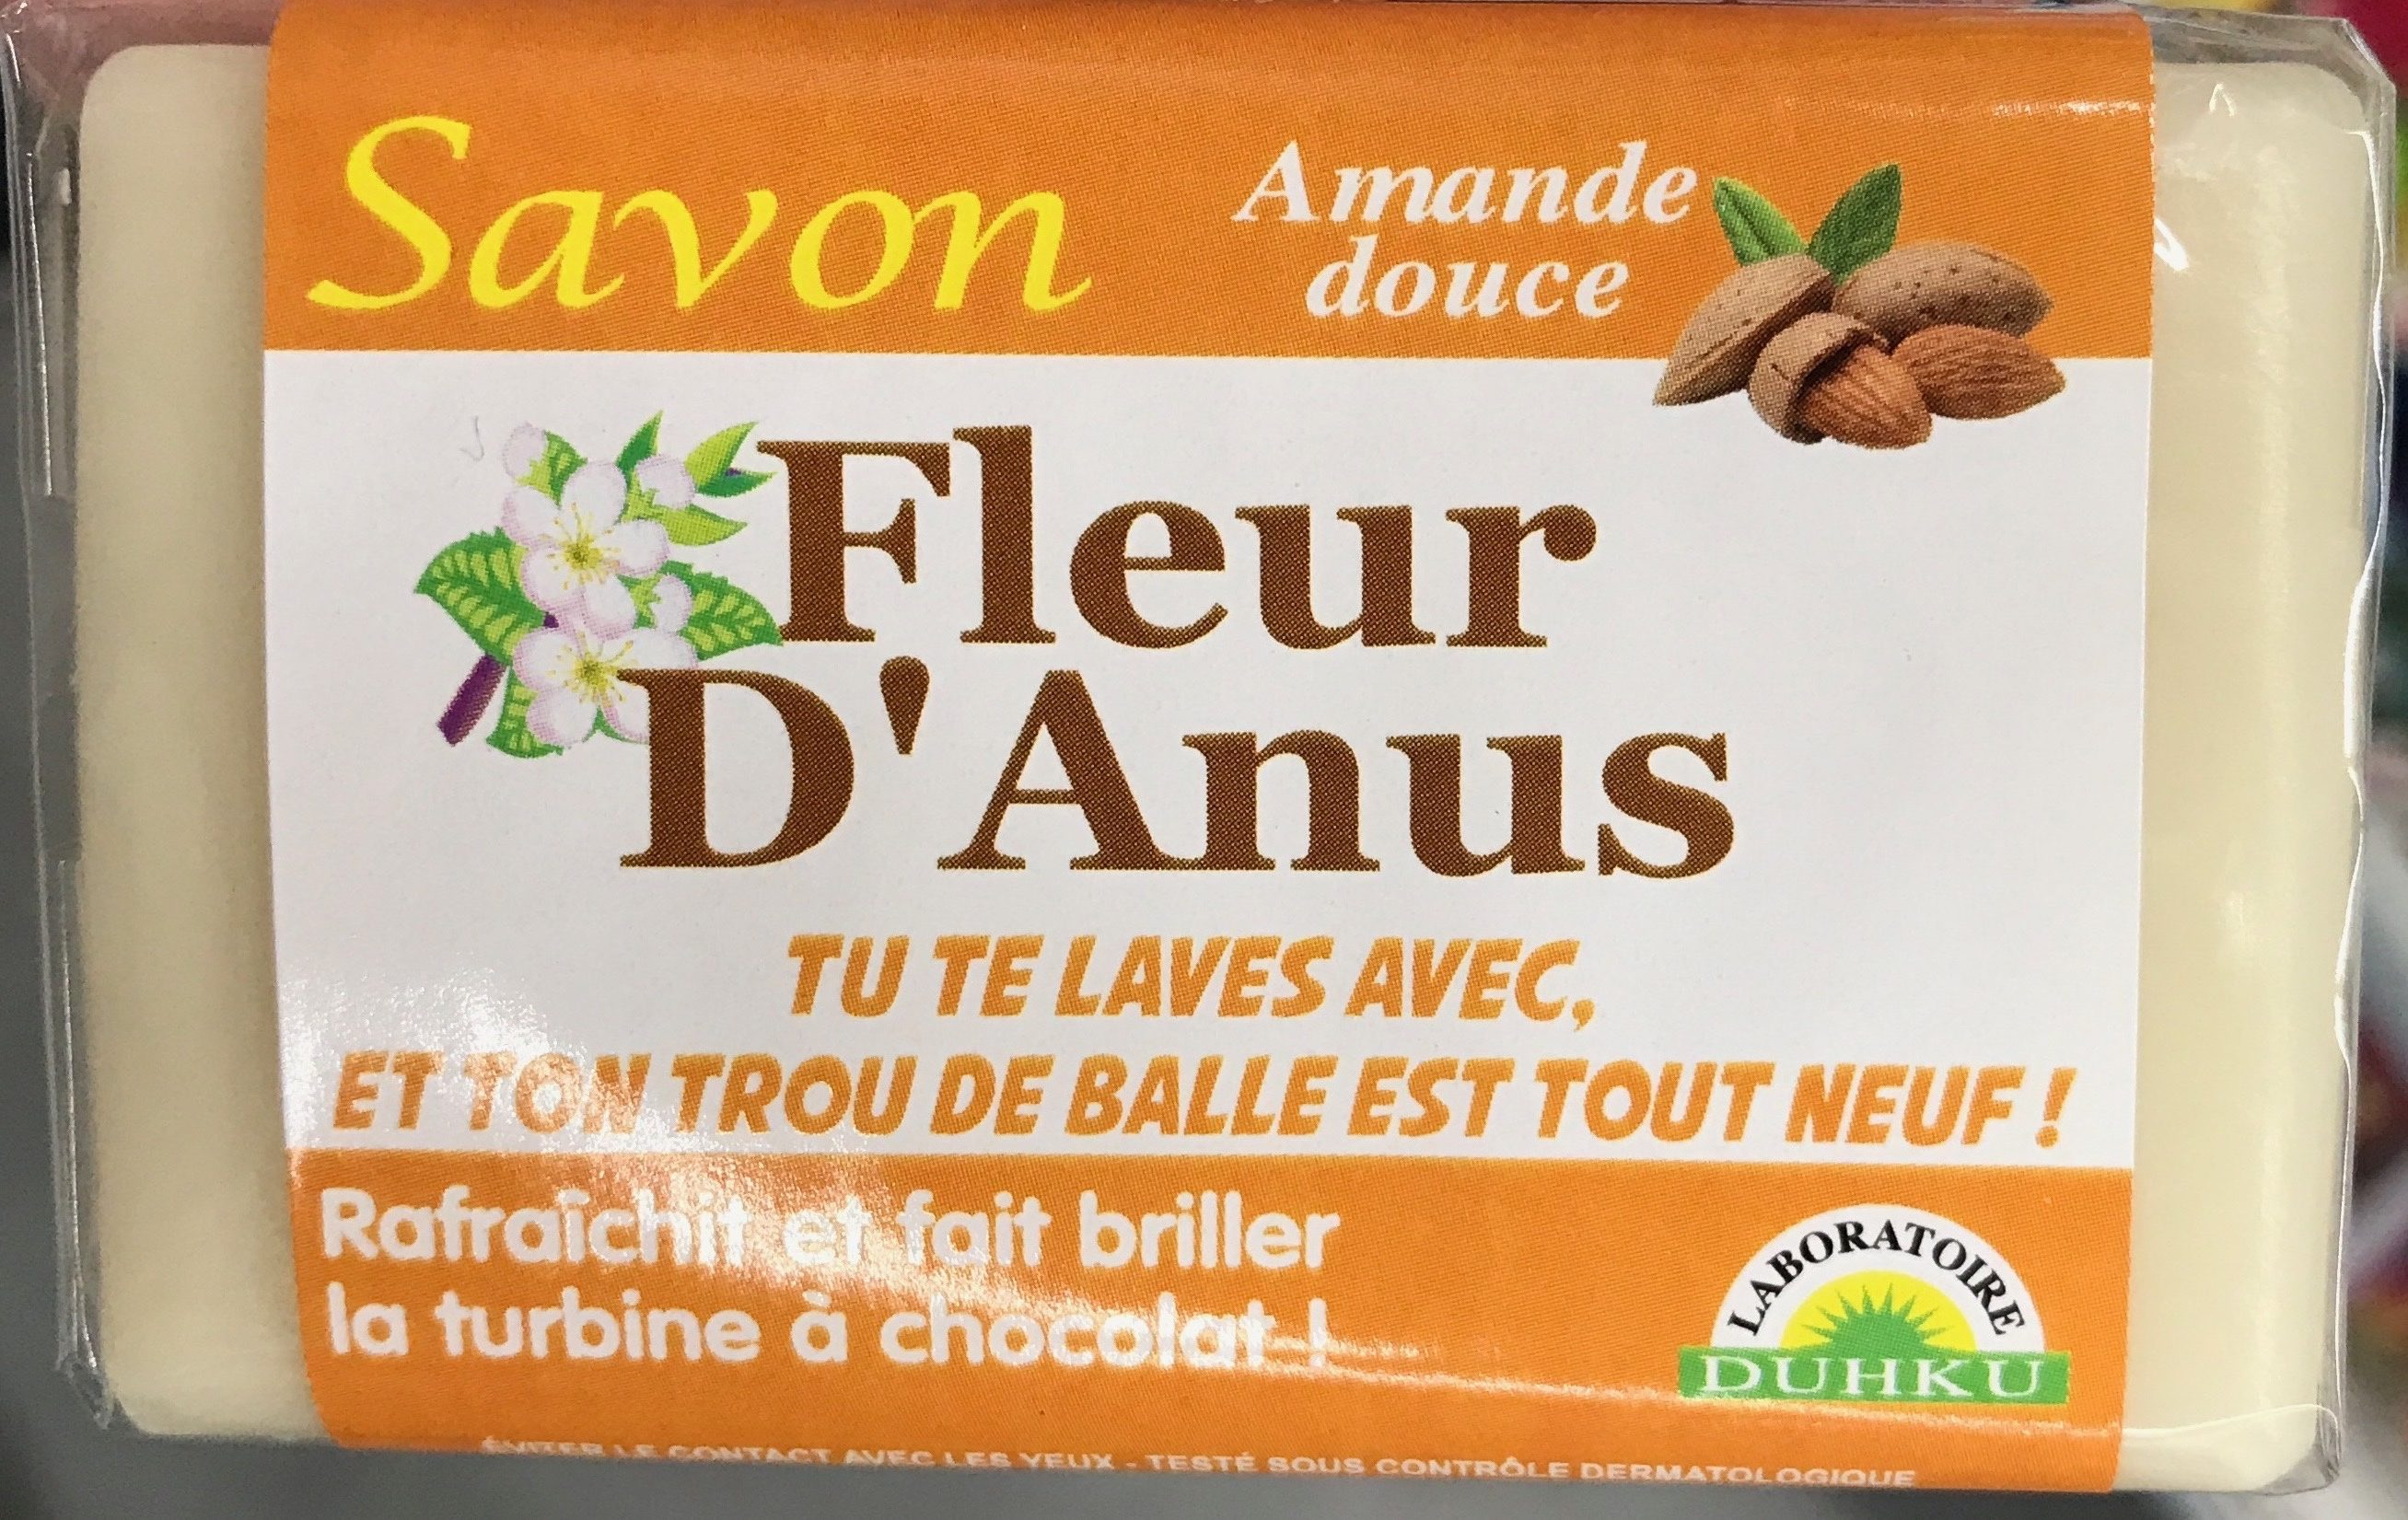 Savon Fleur d'Anus Amande douce - Tuote - fr